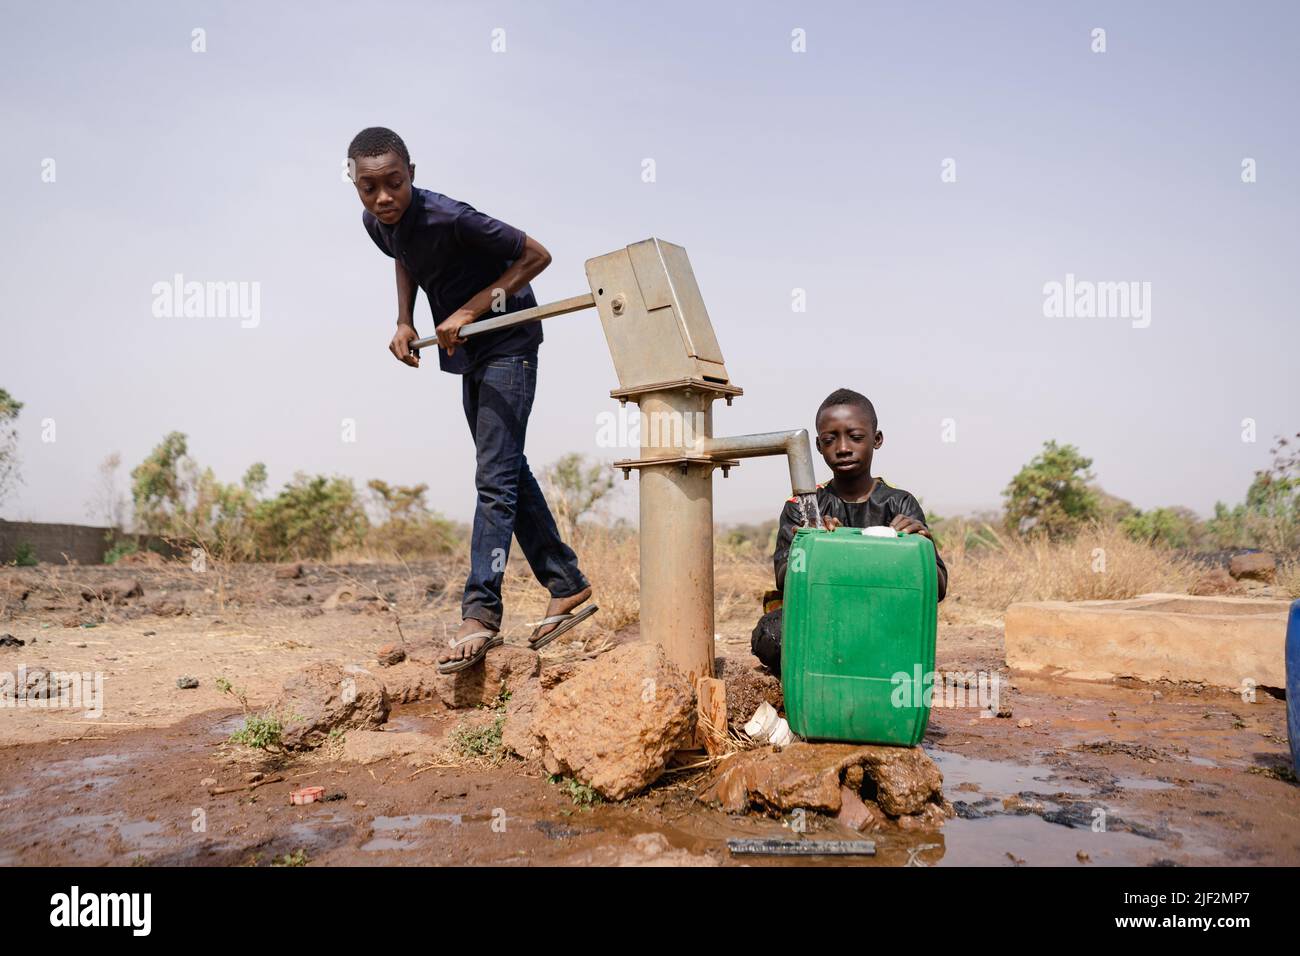 Deux garçons africains se sont occupés de remplir des conteneurs d'eau à une pompe de village éloignée; notion de pénurie d'eau dans les pays en développement Banque D'Images